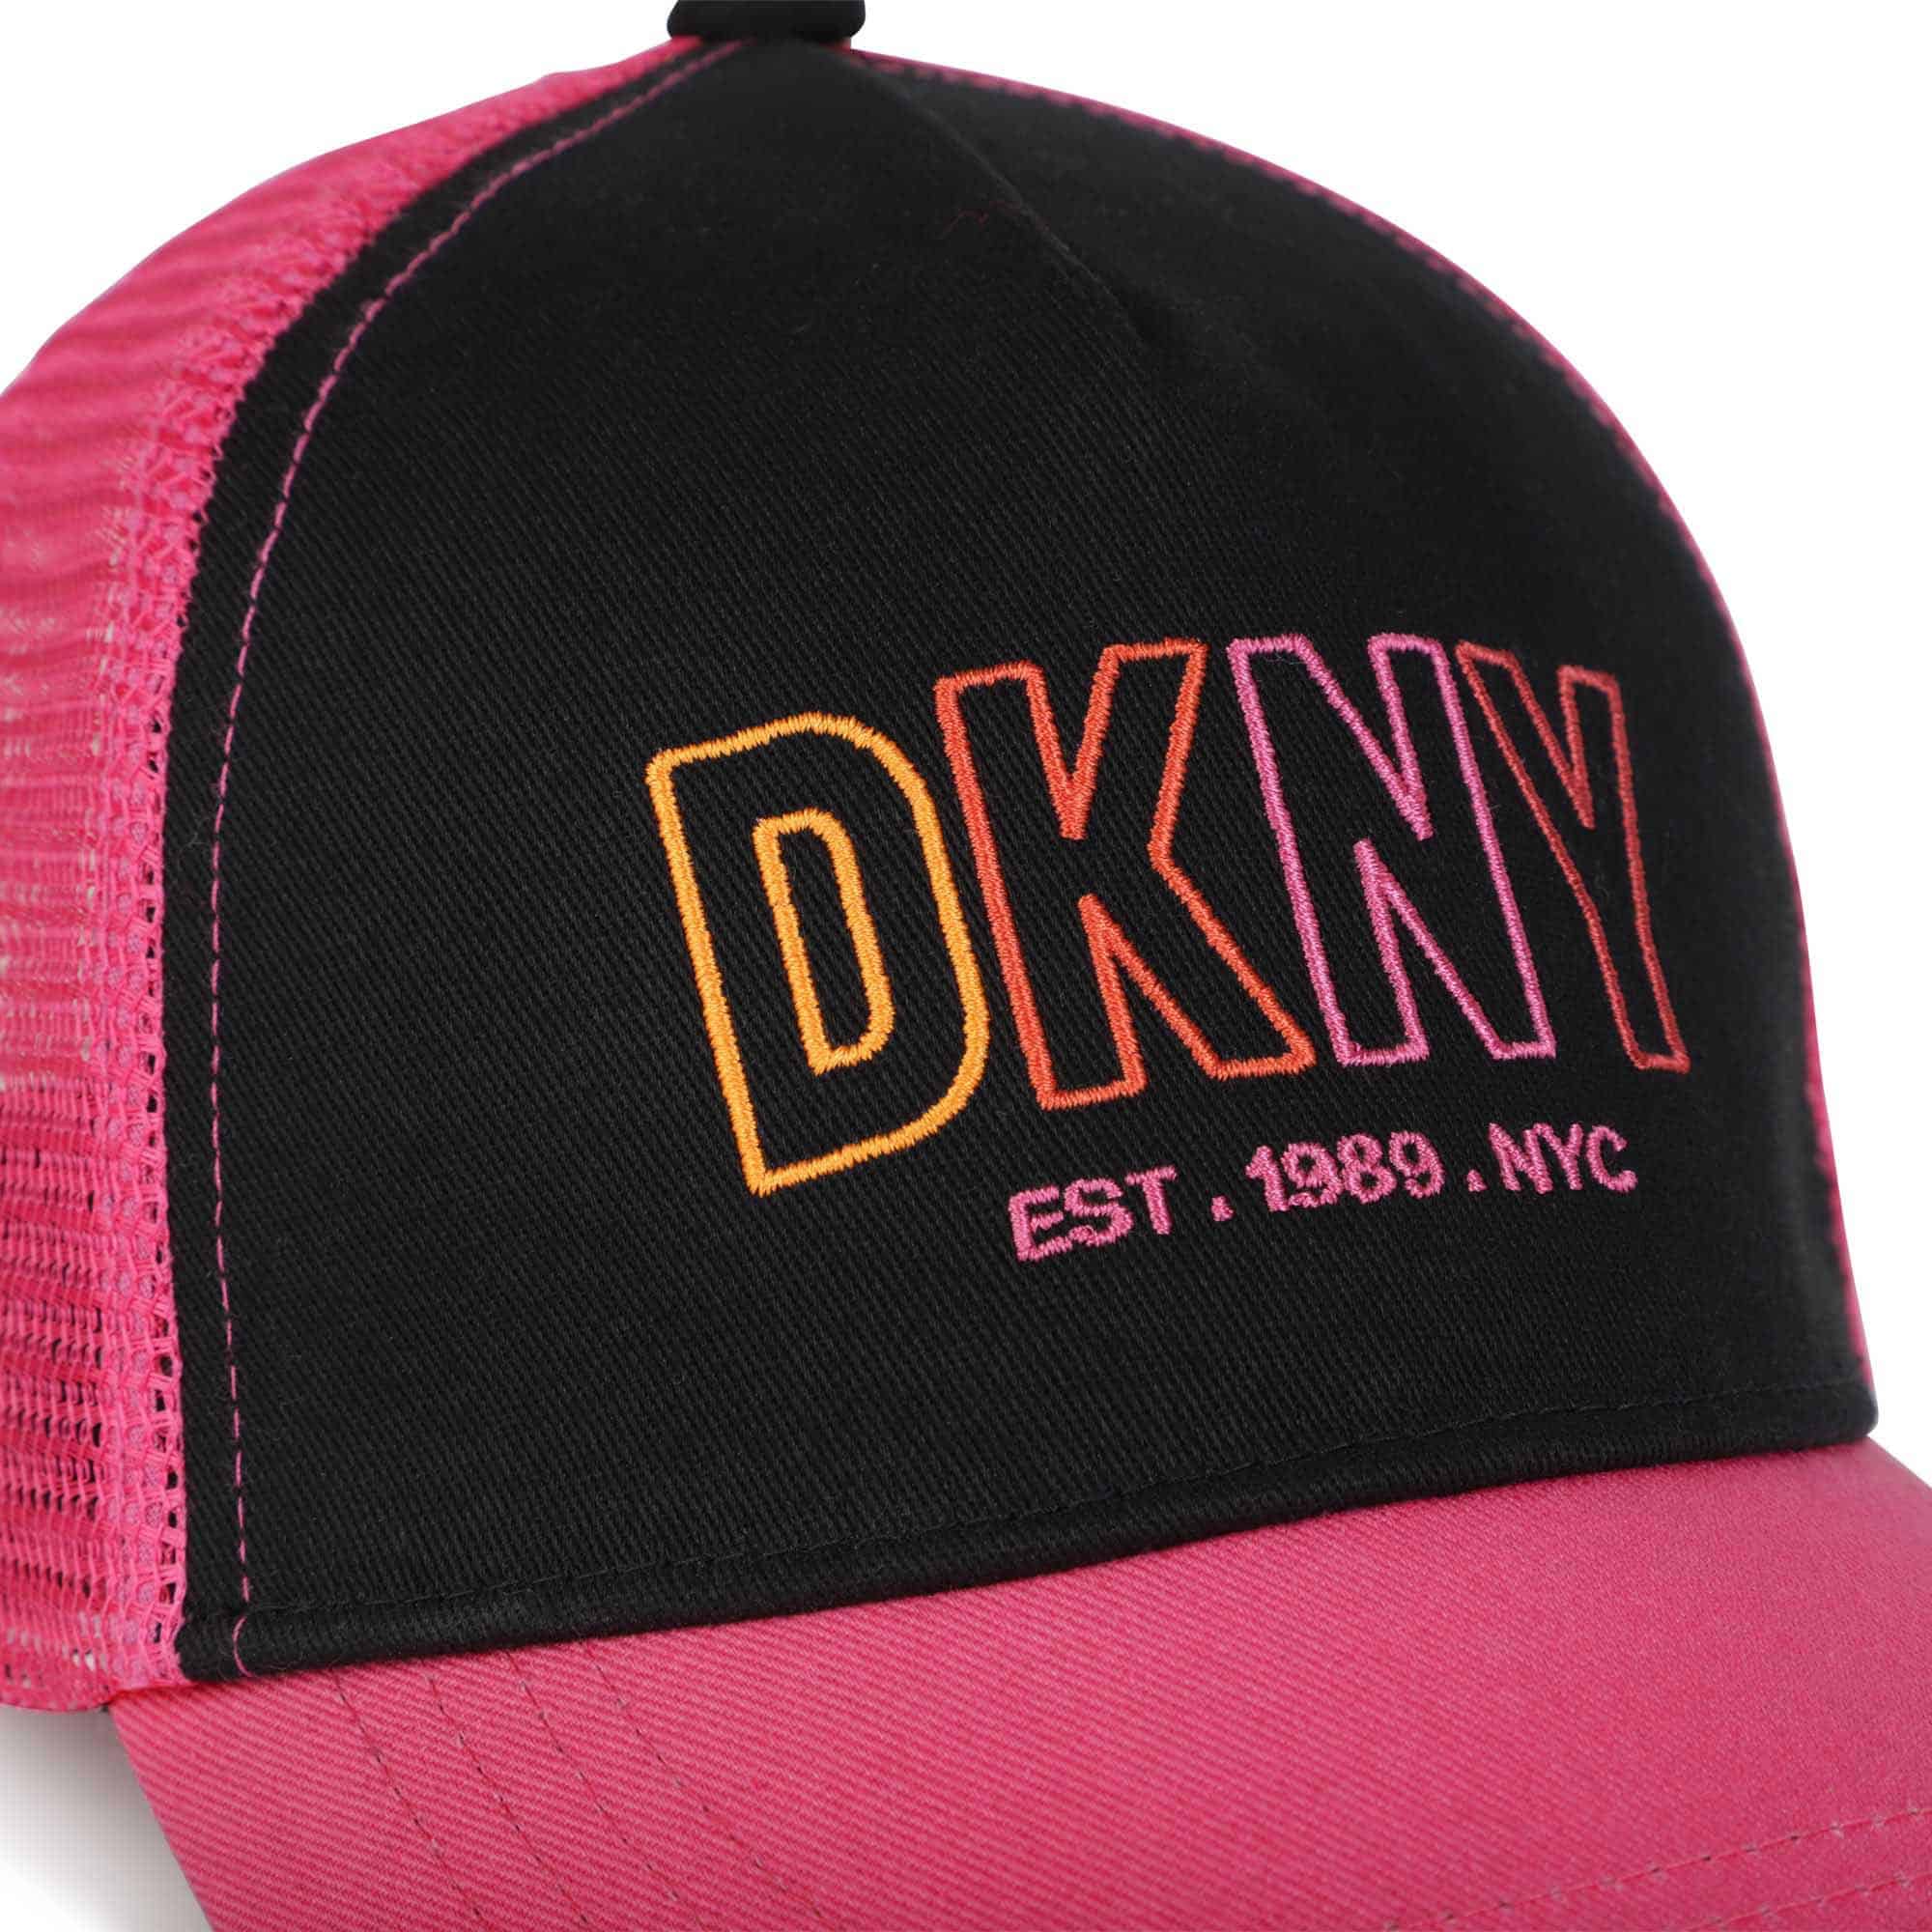 DKNY girls black and pink baseball cap close up